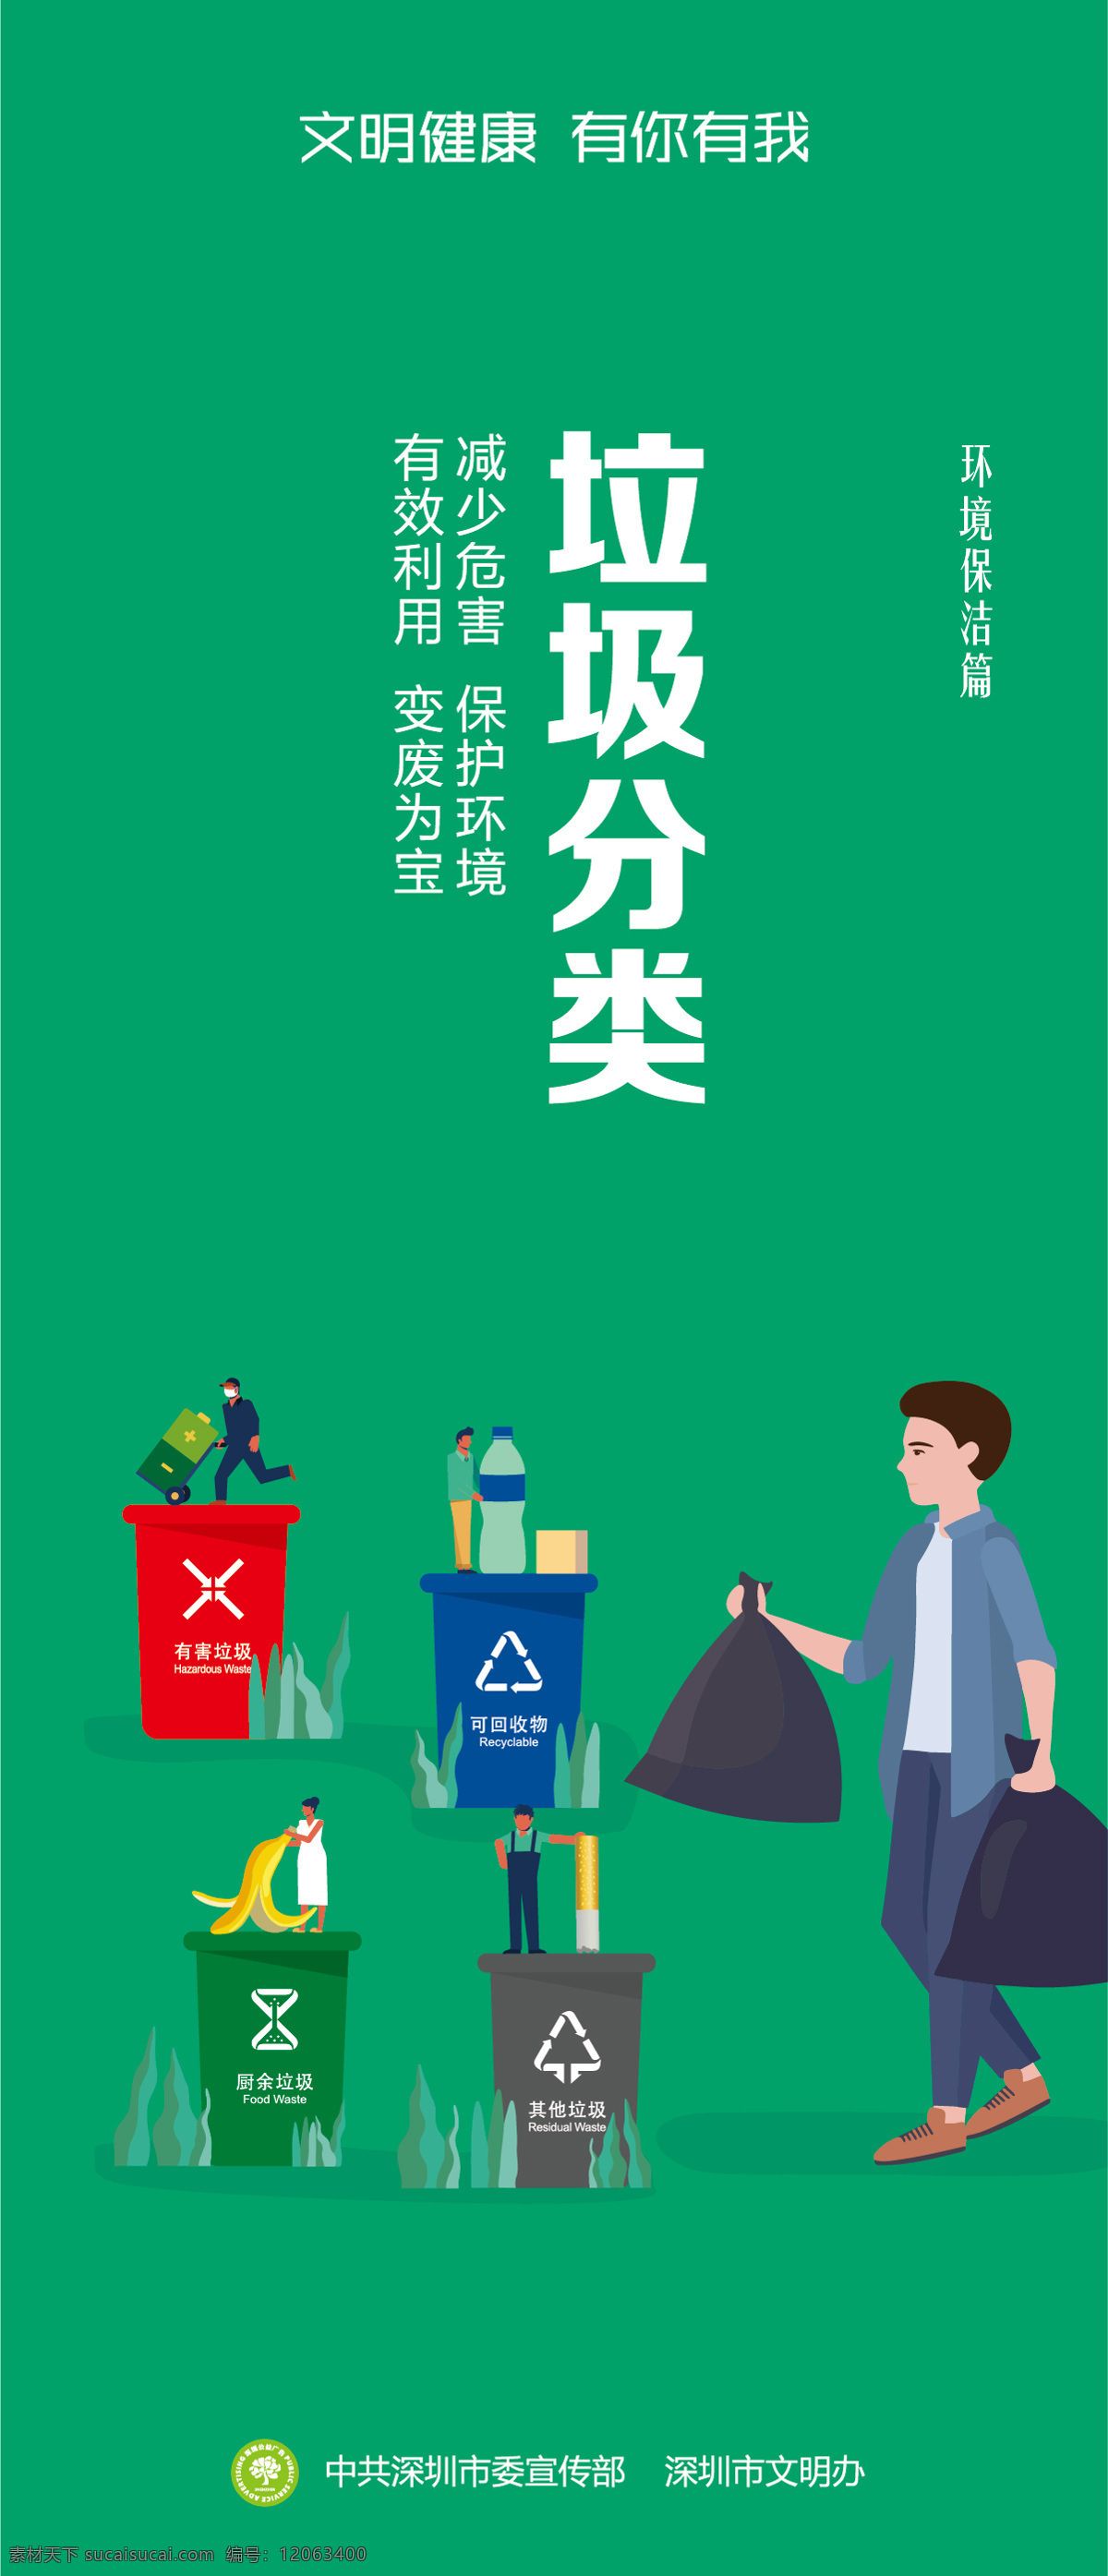 公益海报图片 城市绿化 环保标语 从我做起 公益海报 城市文明 文明城市 垃圾分类 校园垃圾分类 城市垃圾分类